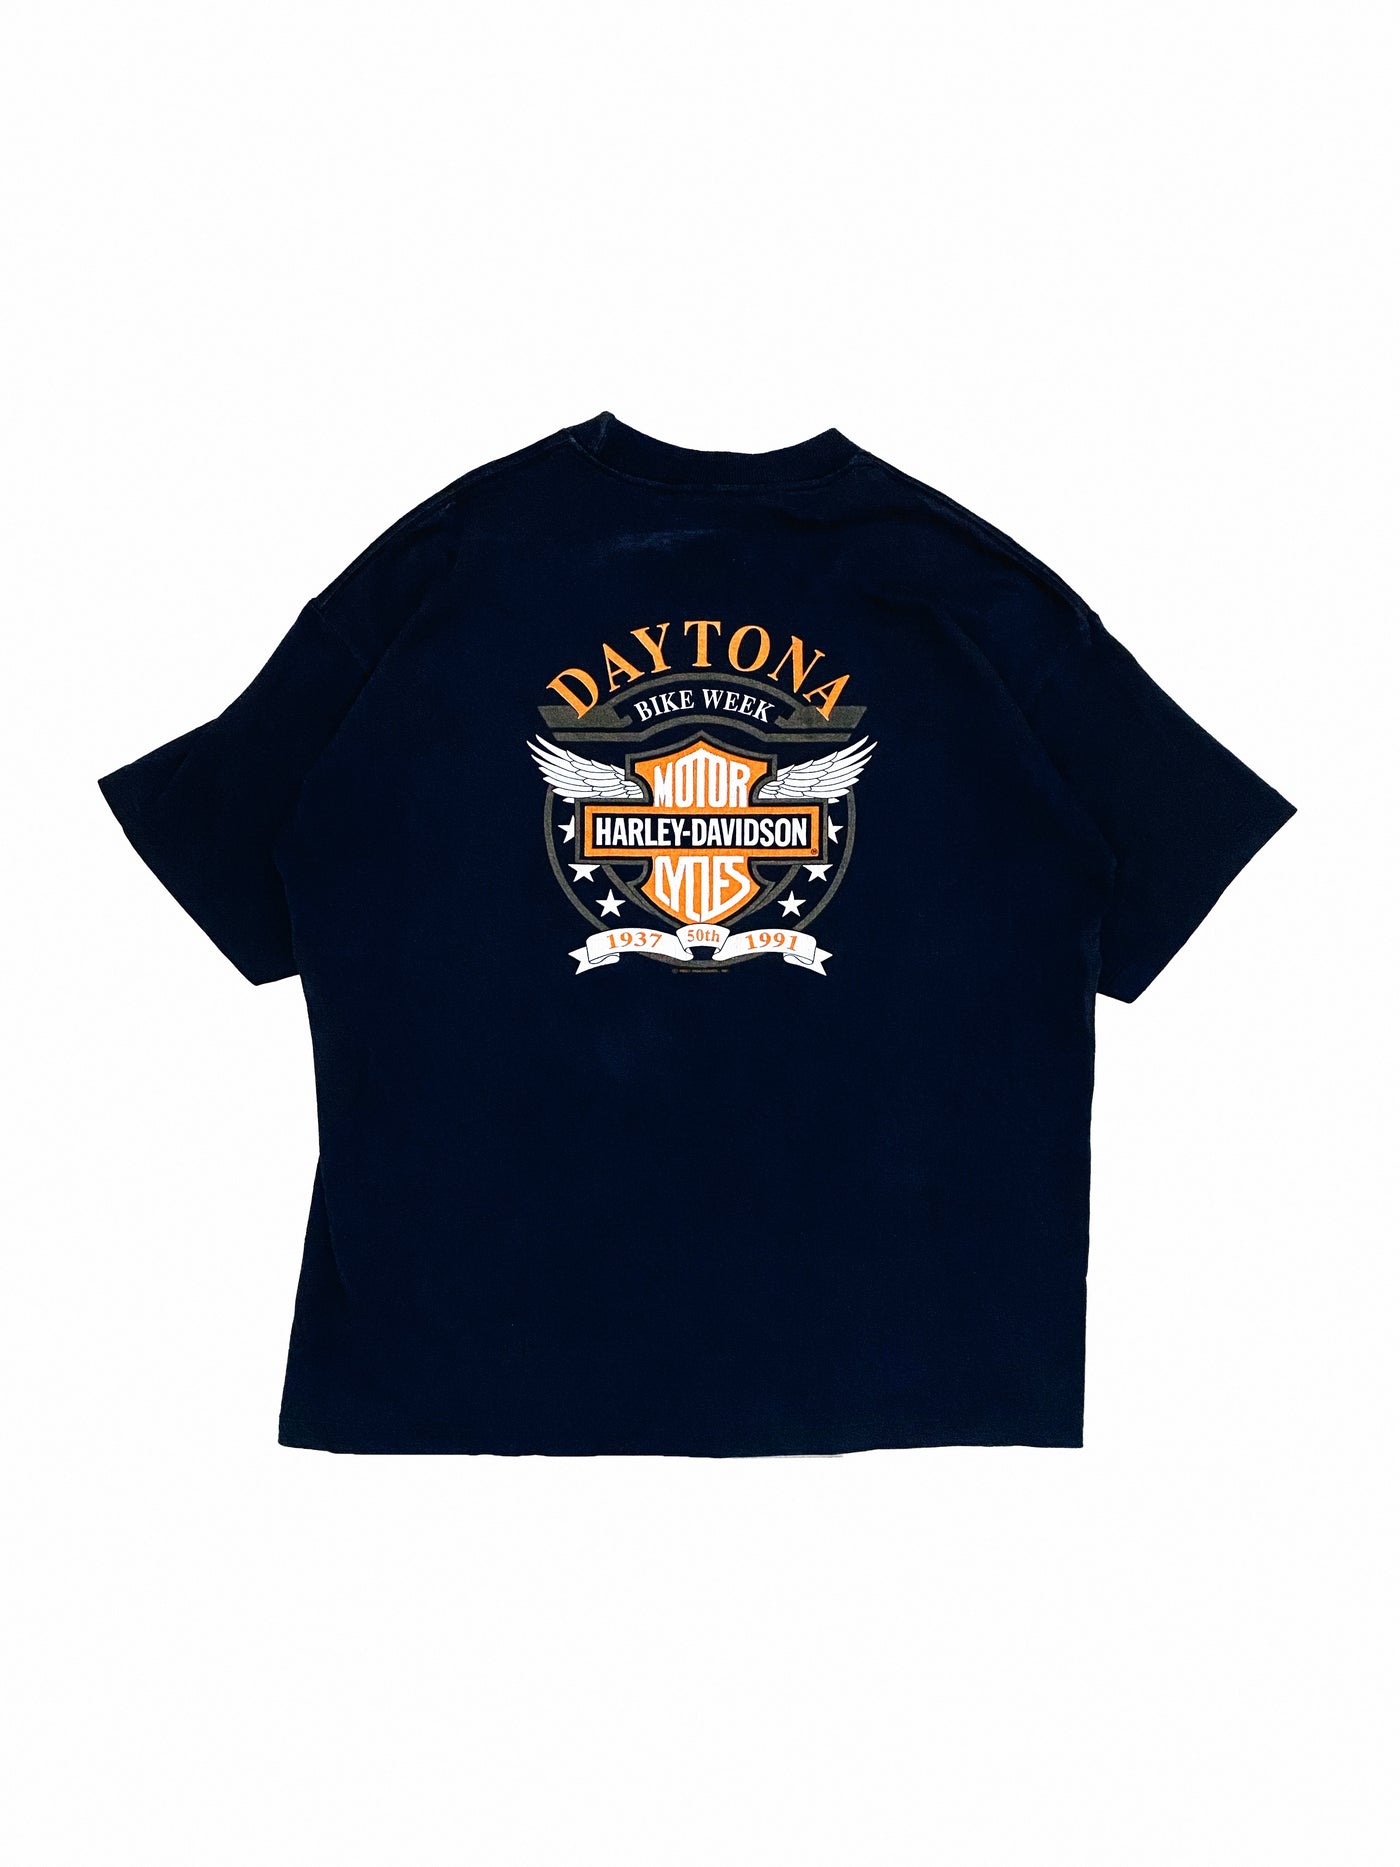 Vintage 1991 Sweet Chrome Harley Davidson T-Shirt